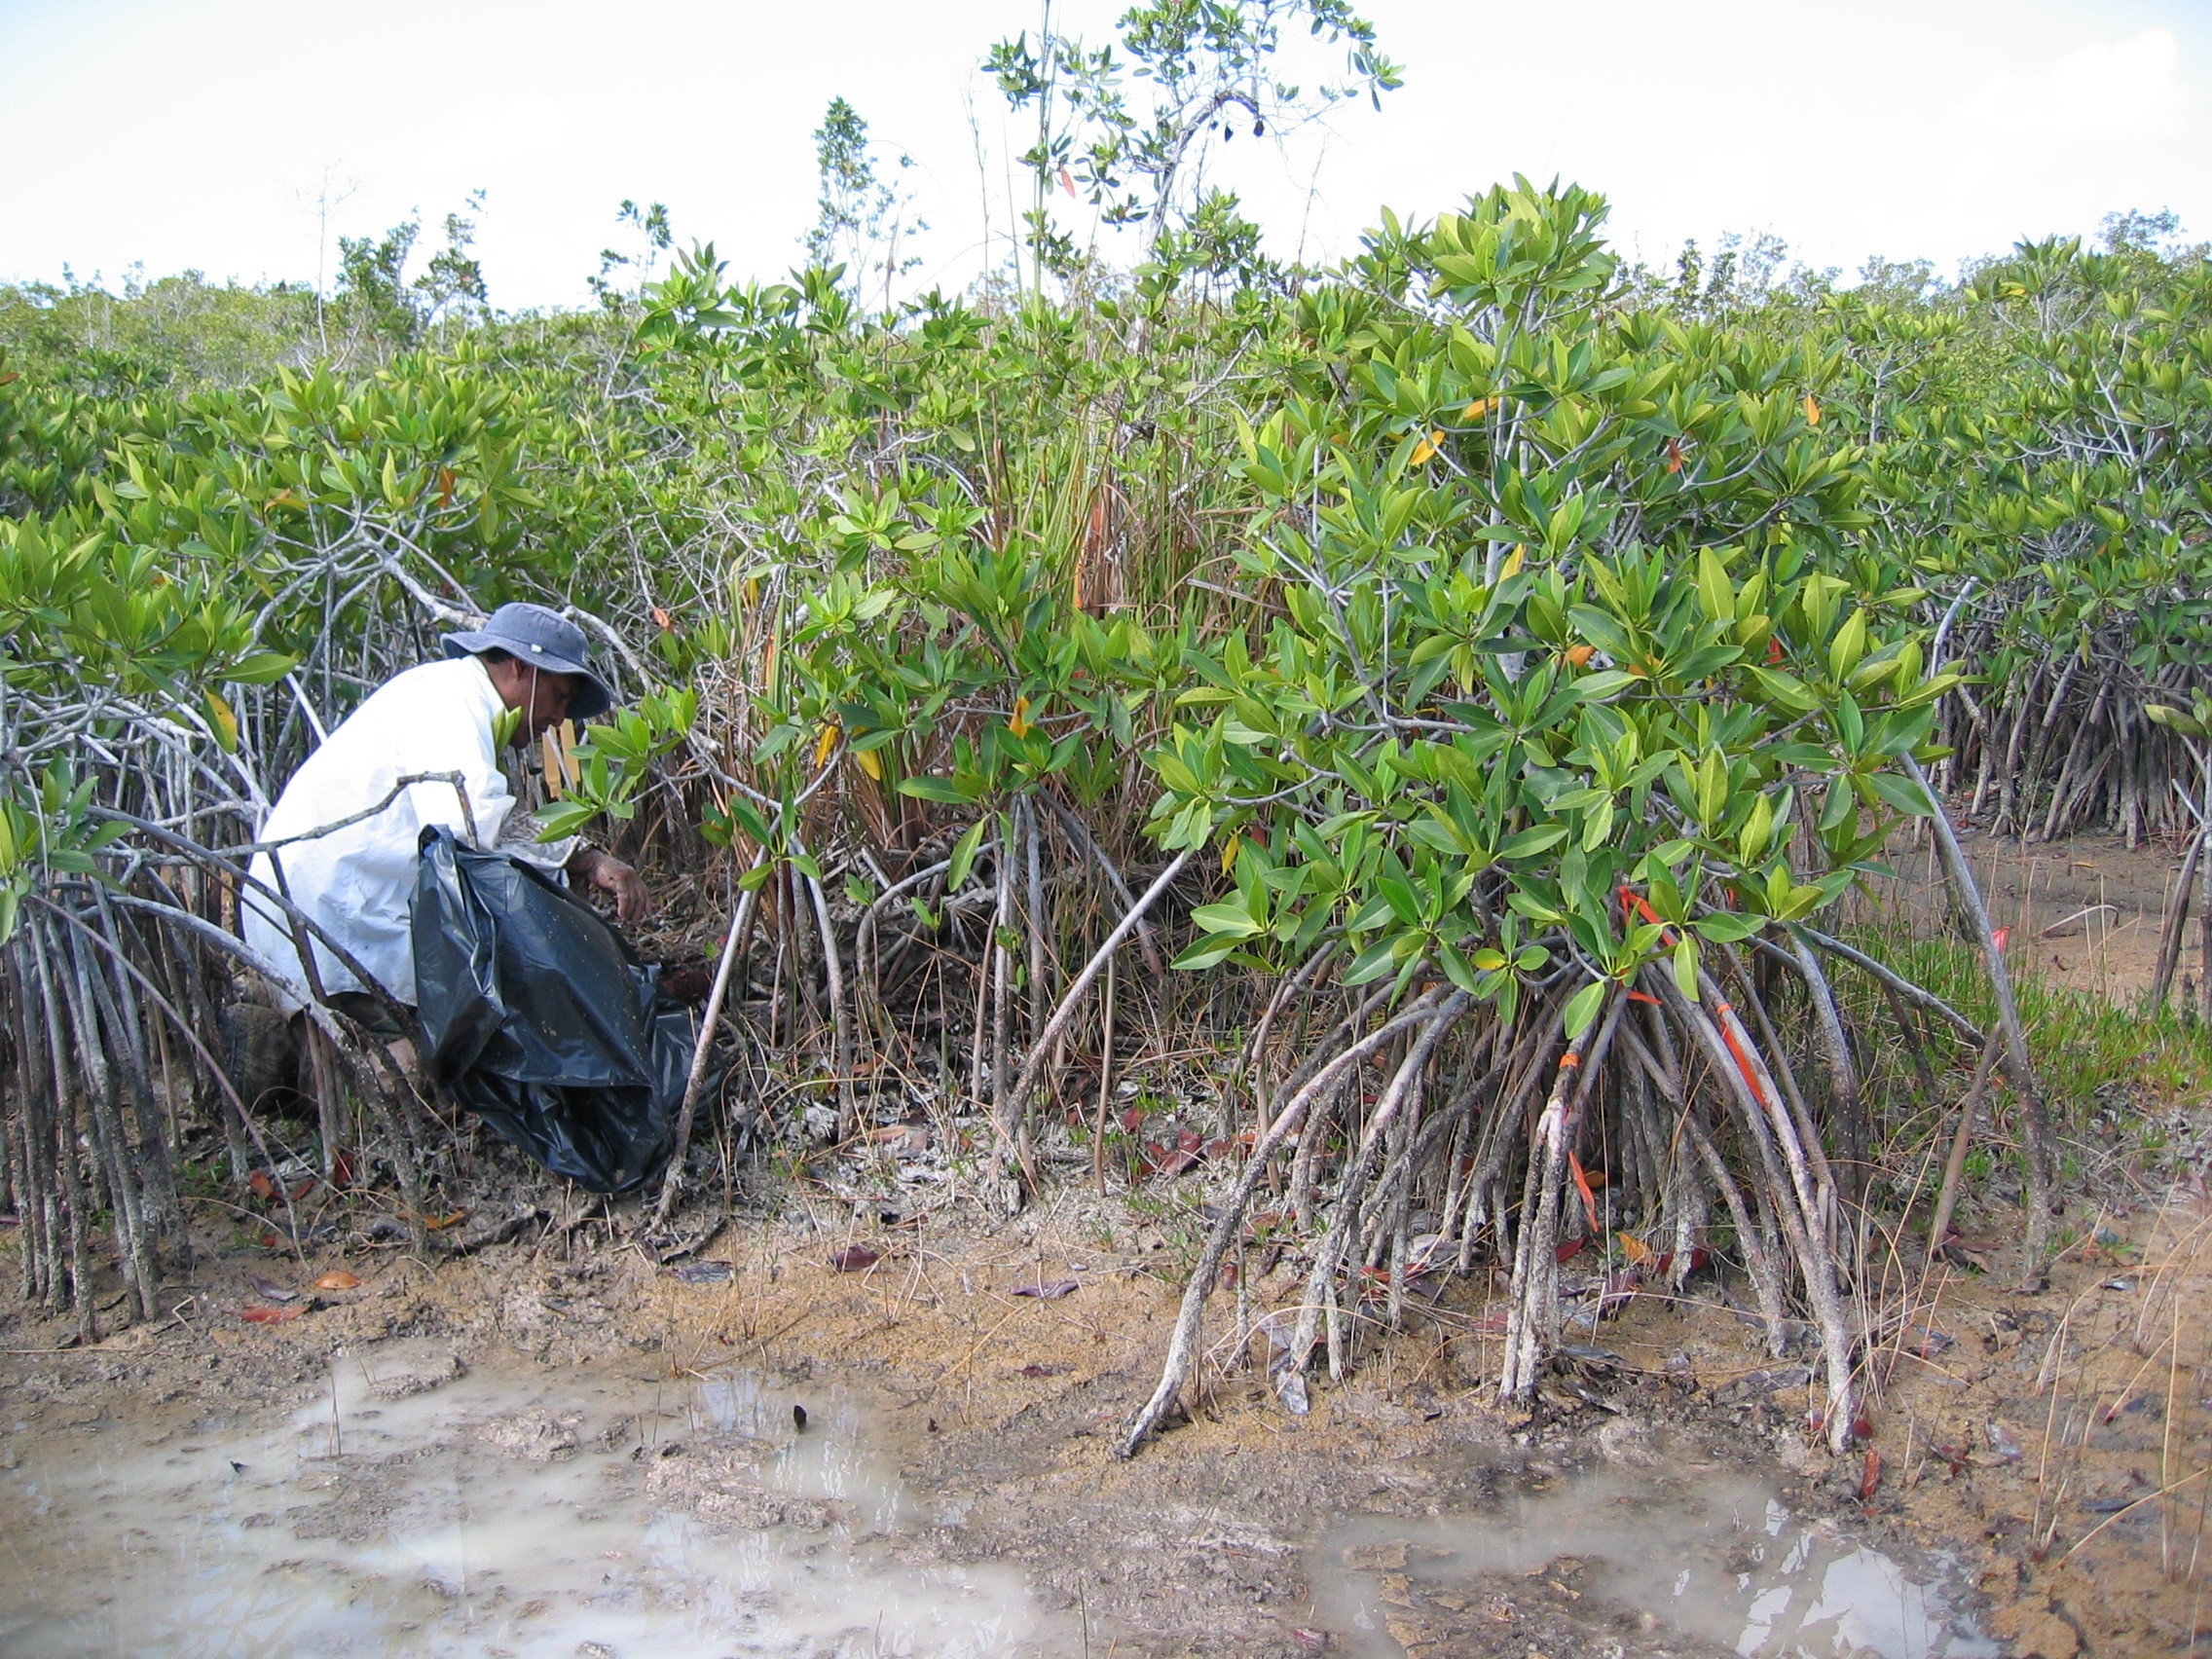 Carlos Coronado-Molina measuring dead wood biomass in dwarf mangroves at TS/Ph-6b in Taylor Slough